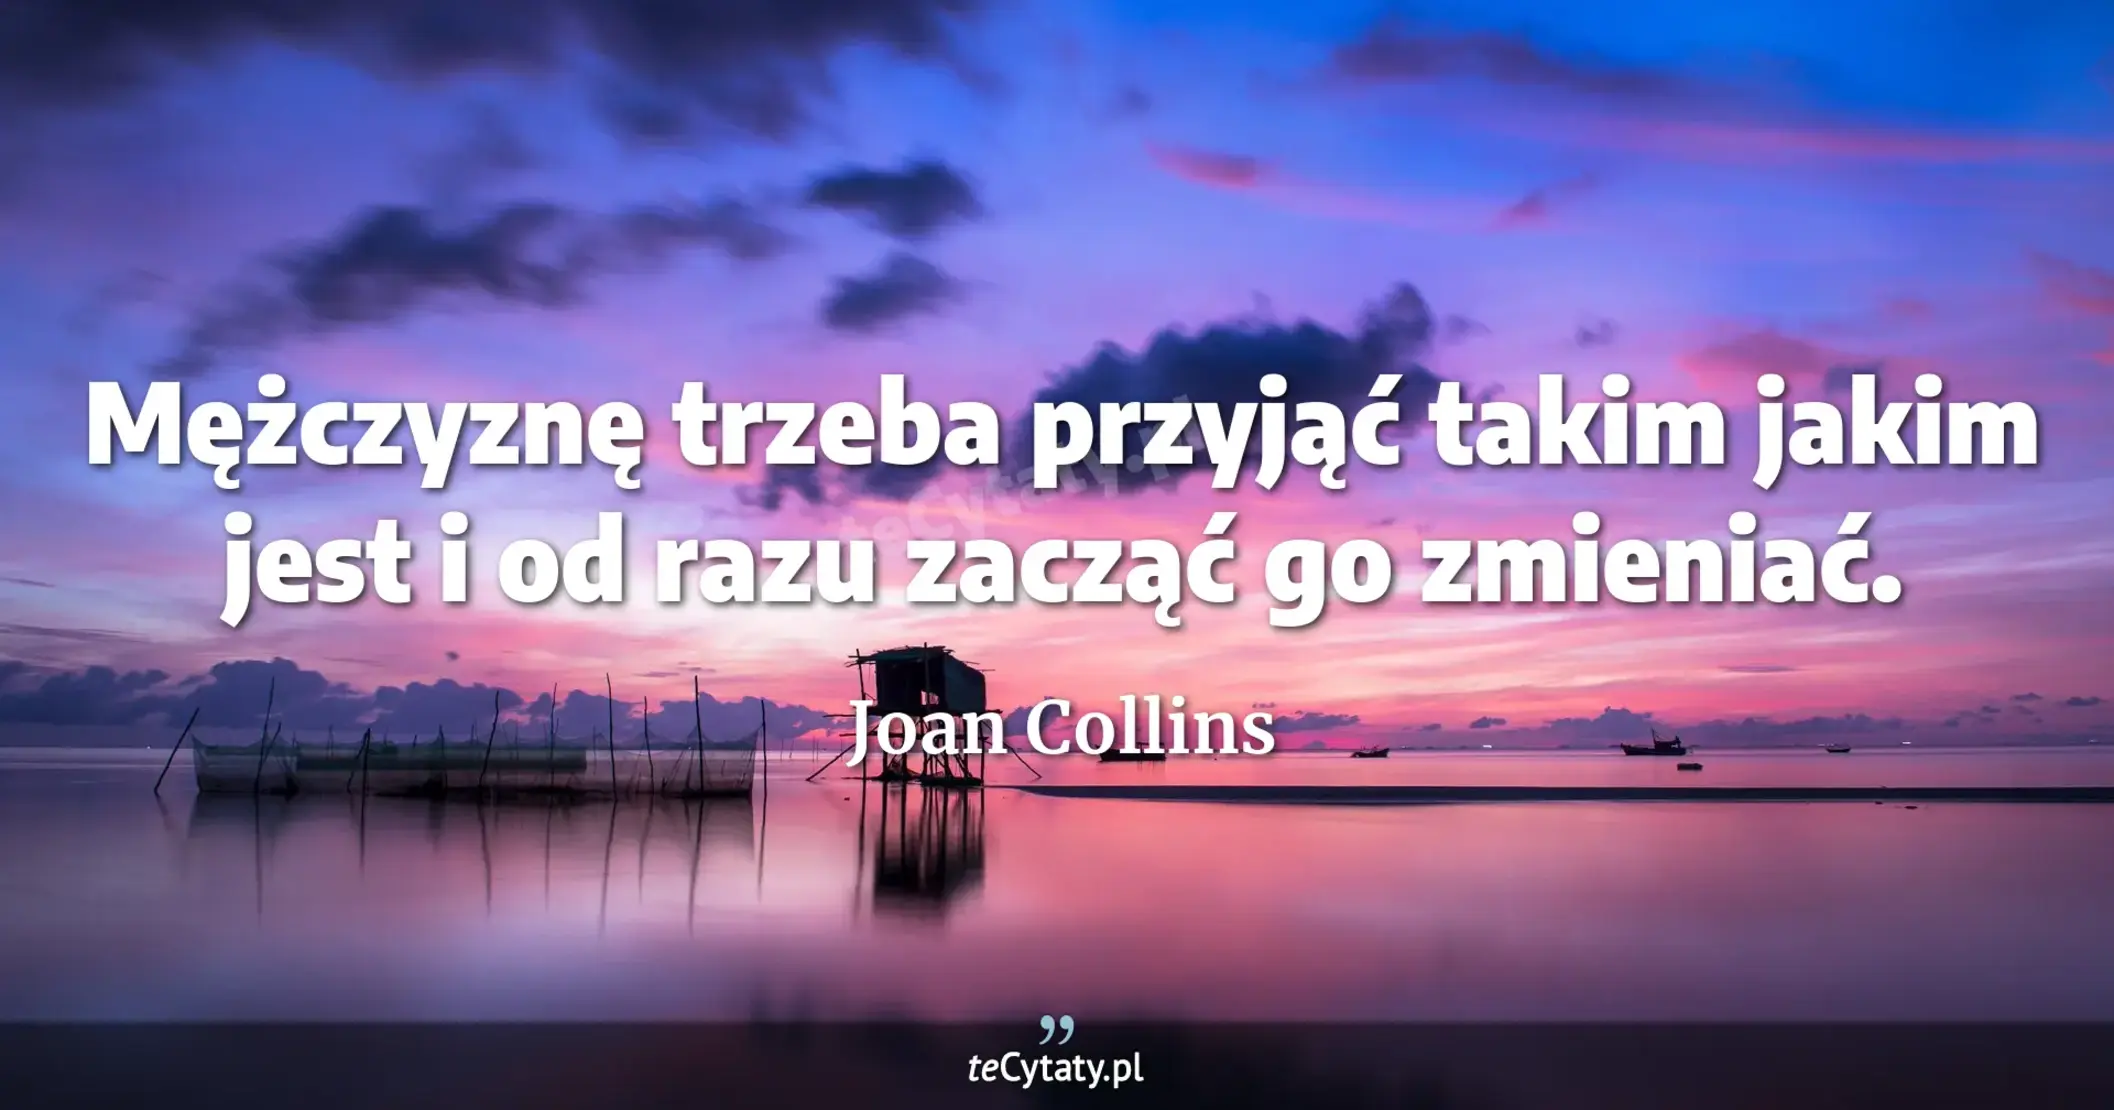 Mężczyznę trzeba przyjąć takim jakim jest i od razu zacząć go zmieniać. - Joan Collins